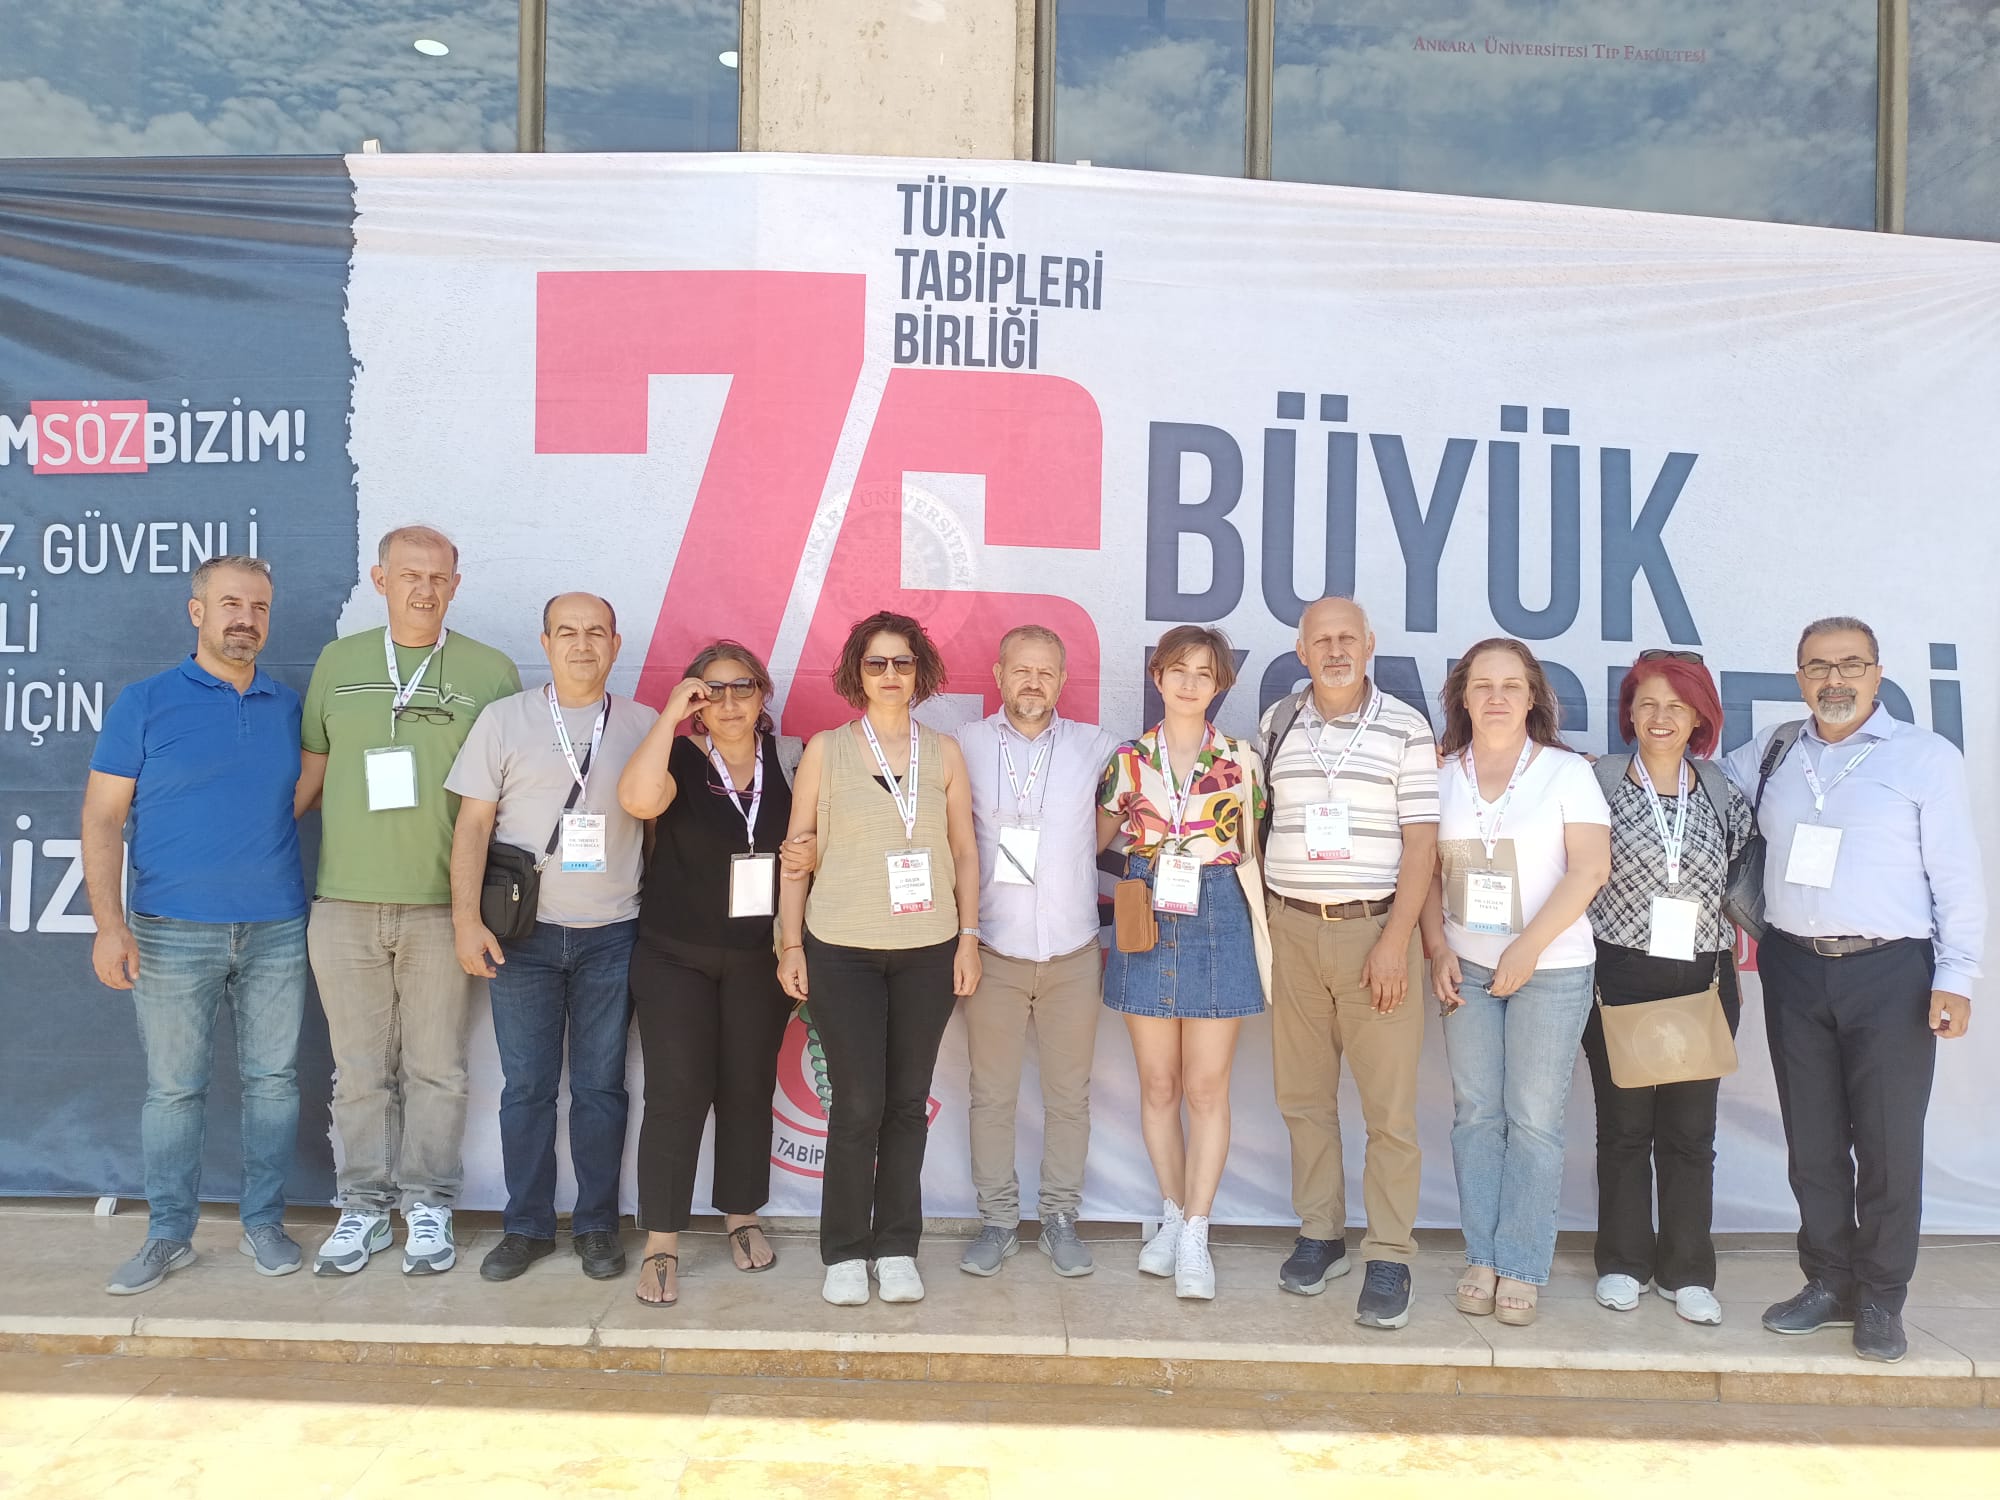 Türk Tabipleri Birliği 76. Seçimli Büyük Kongresi 28-29-30 Haziranda Ankara'da yapıldı.